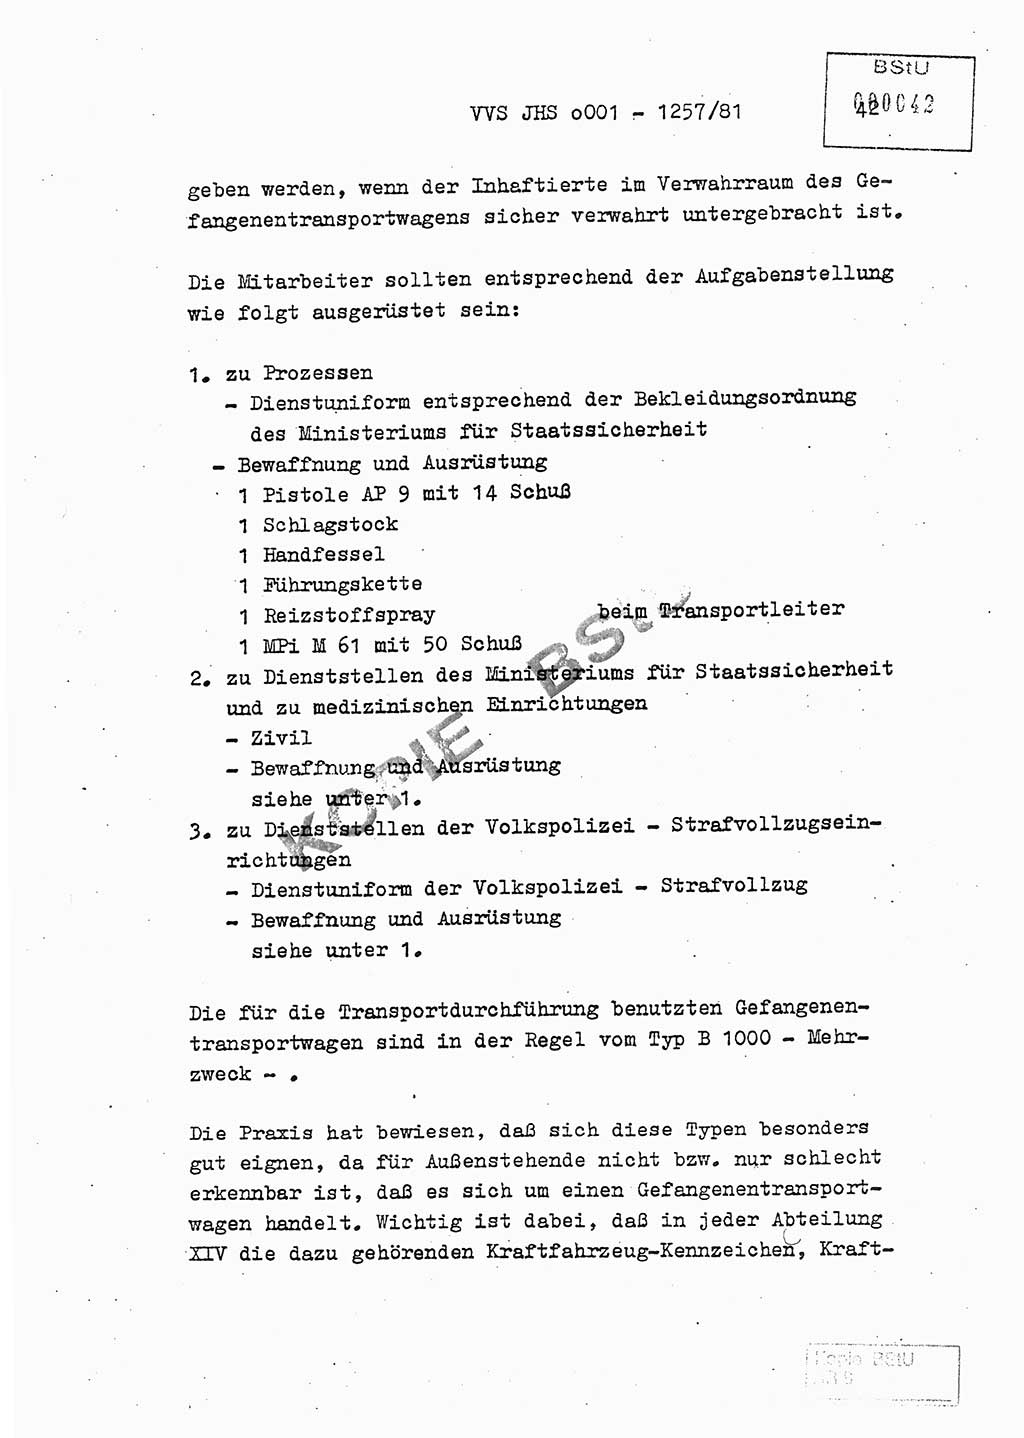 Fachschulabschlußarbeit Unterleutnant Dieter Möller (BV Rst. Abt. ⅩⅣ), Ministerium für Staatssicherheit (MfS) [Deutsche Demokratische Republik (DDR)], Juristische Hochschule (JHS), Vertrauliche Verschlußsache (VVS) o001-1257/81, Potsdam 1982, Seite 42 (FS-Abschl.-Arb. MfS DDR JHS VVS o001-1257/81 1982, S. 42)